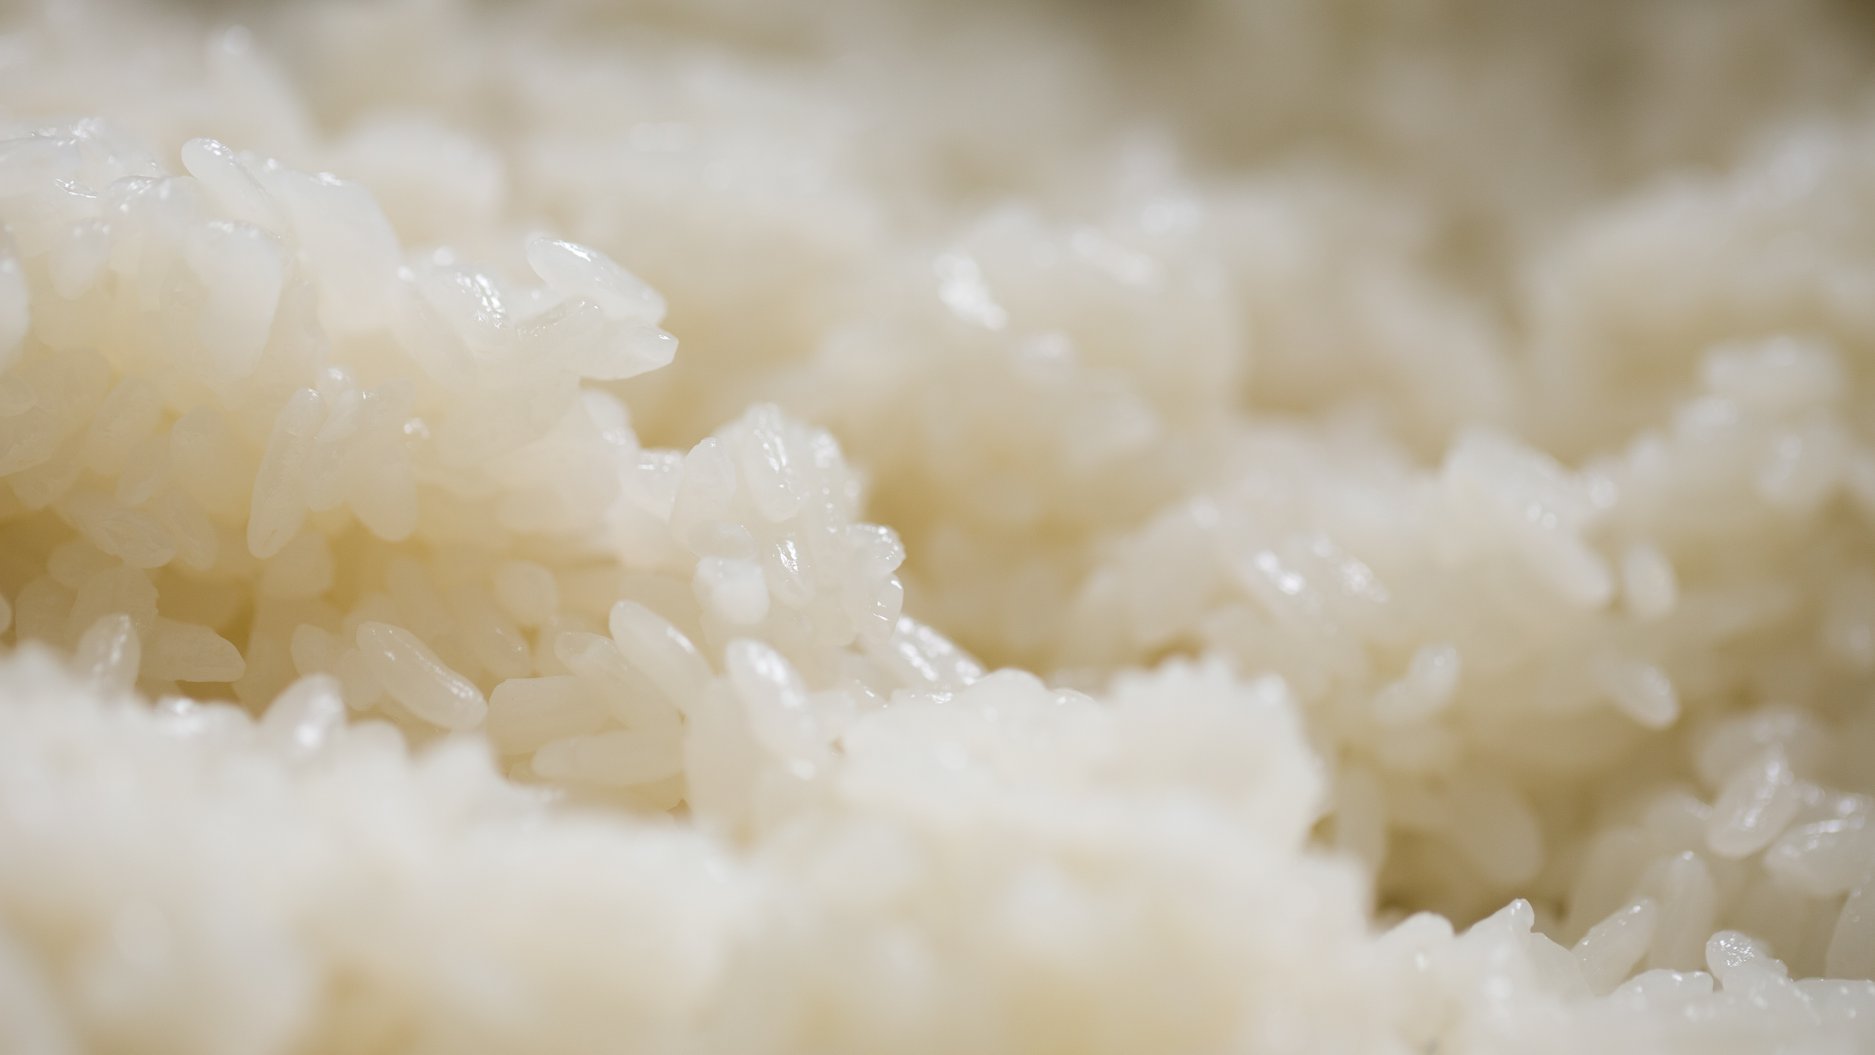 Giá Gạo Nhật hiện nay, Mua Gạo Nhật chất lượng, giá rẻ ở đâu